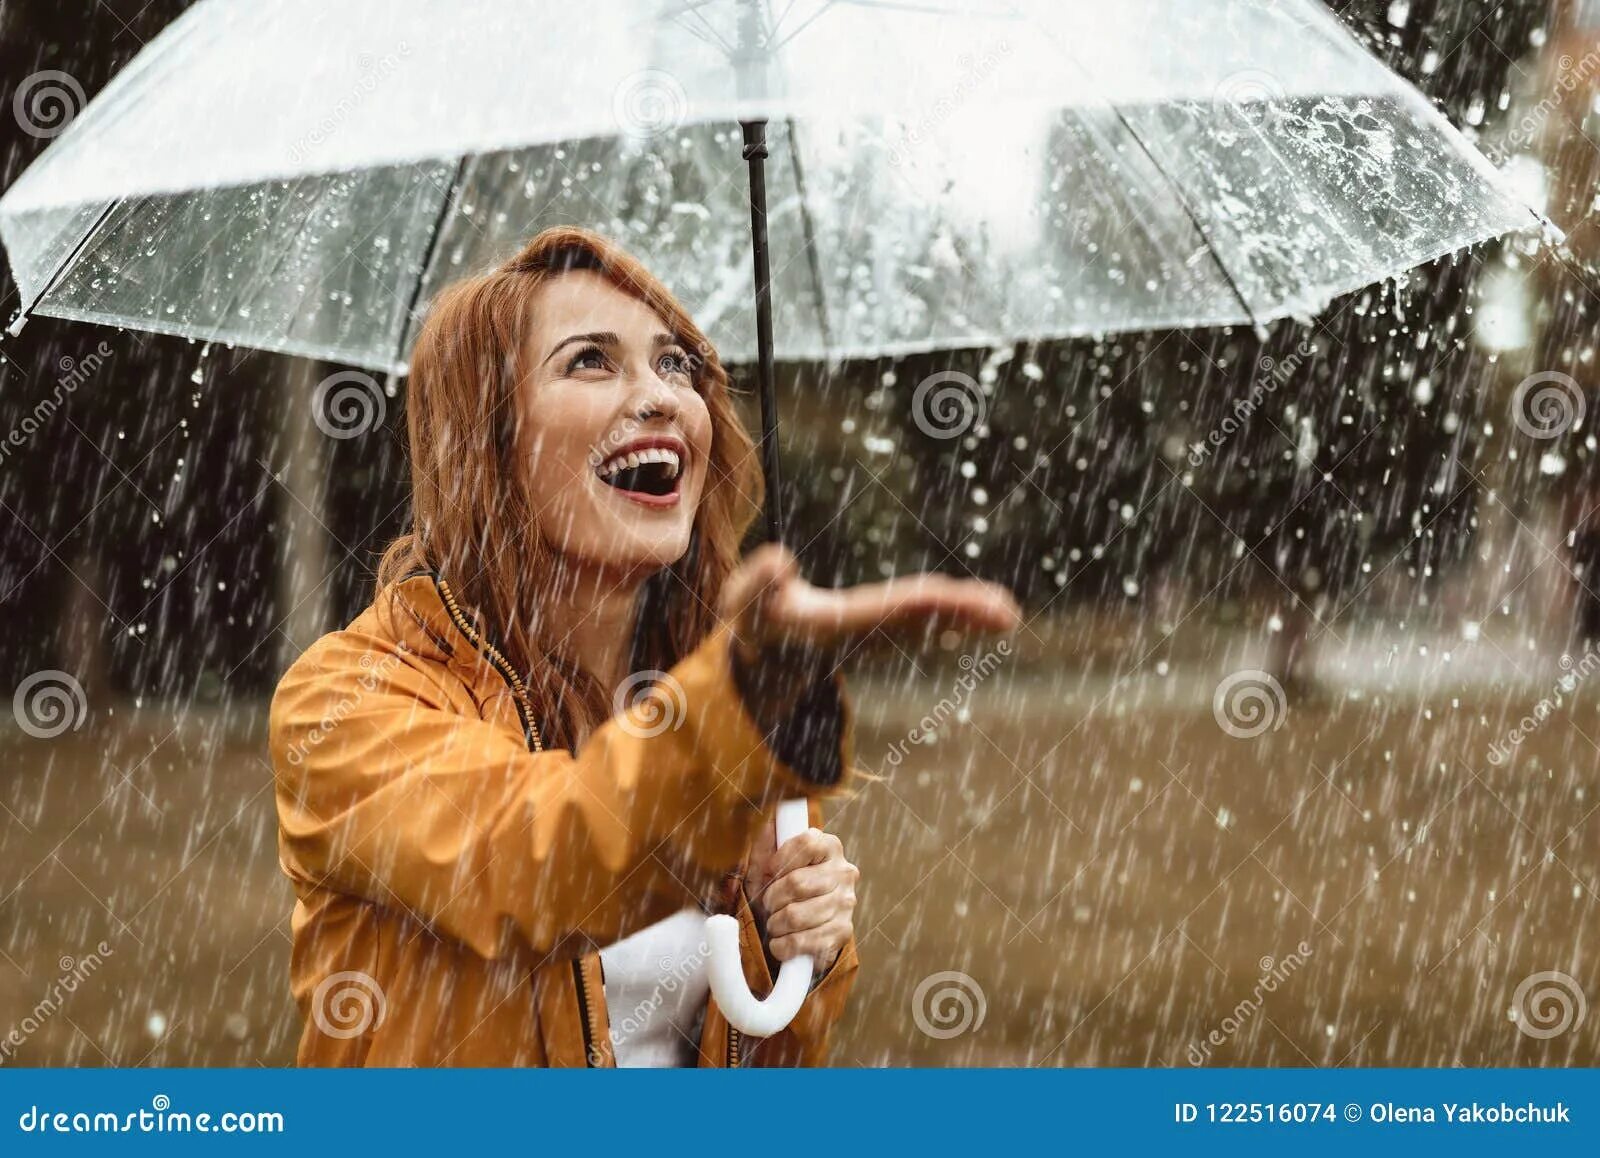 Ловить ртом воздух. Девушка ловит капли дождя. Девушка под дождем улыбается. Девушка ртом ловит капли. Девушка ловит капли.